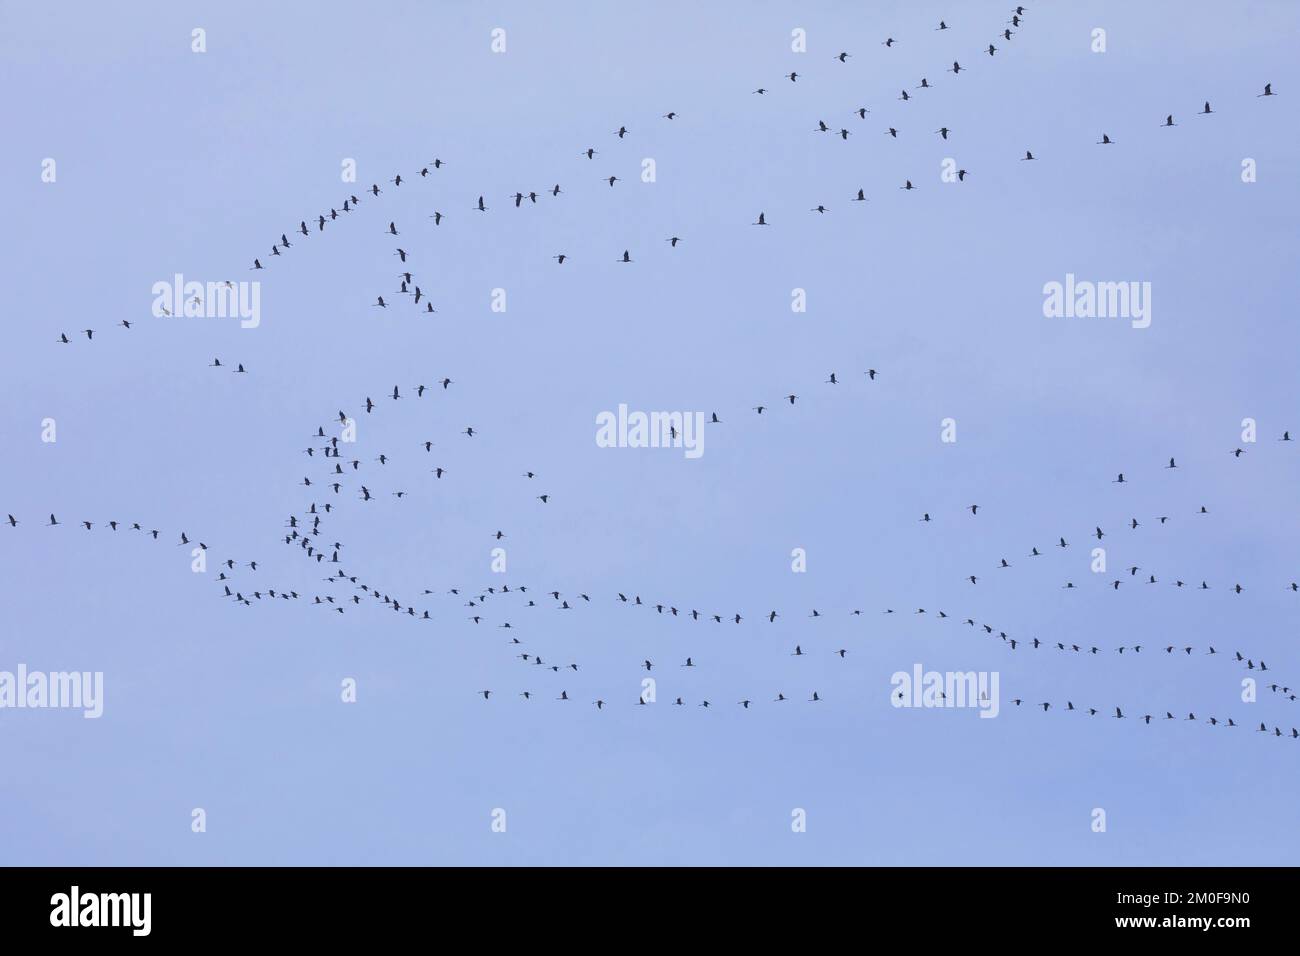 Grue commune, grue eurasienne (Grus grus), troupeau d'oiseaux en vol dans le ciel, migration d'oiseaux, Allemagne Banque D'Images